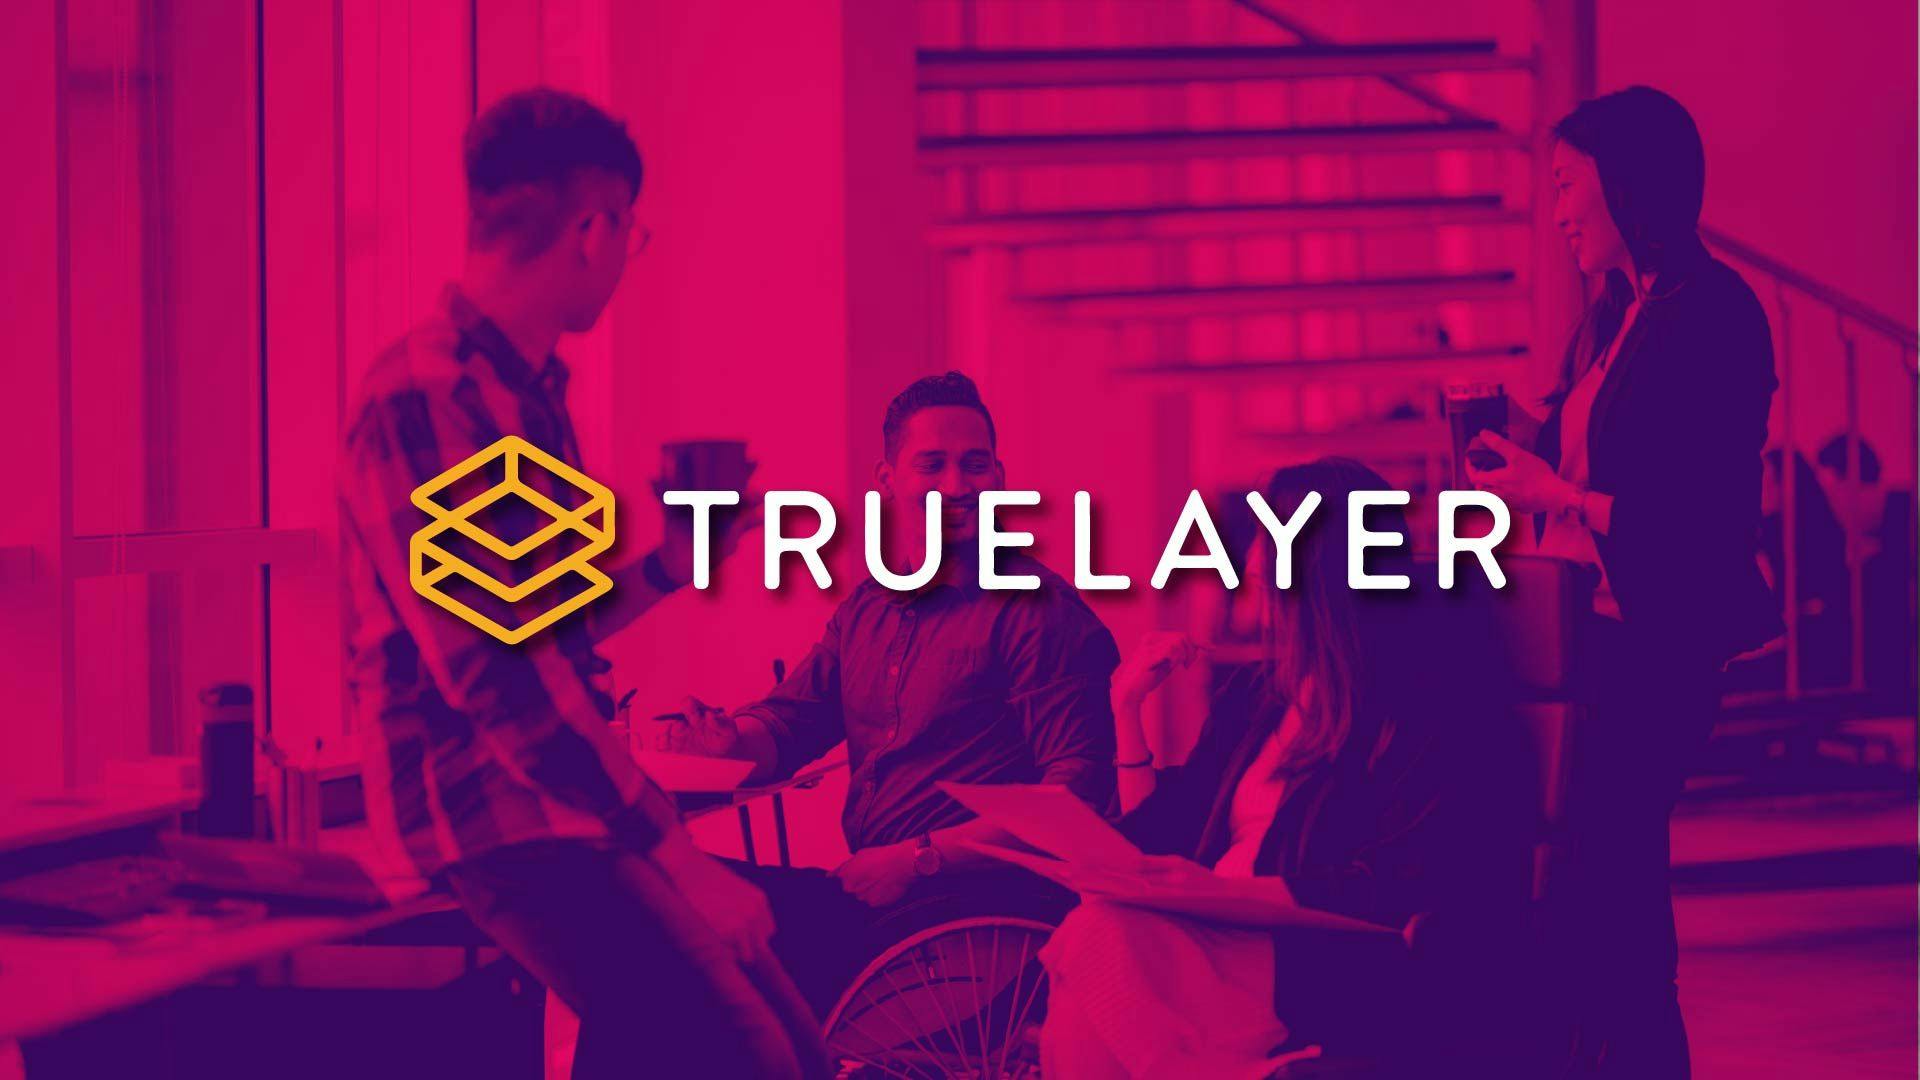 Menurut LinkedIn, TrueLayer memiliki 443 pekerja, hal ini berarti ada sekitar 45 pekerja yang akan terdampak. (Foto CDI)